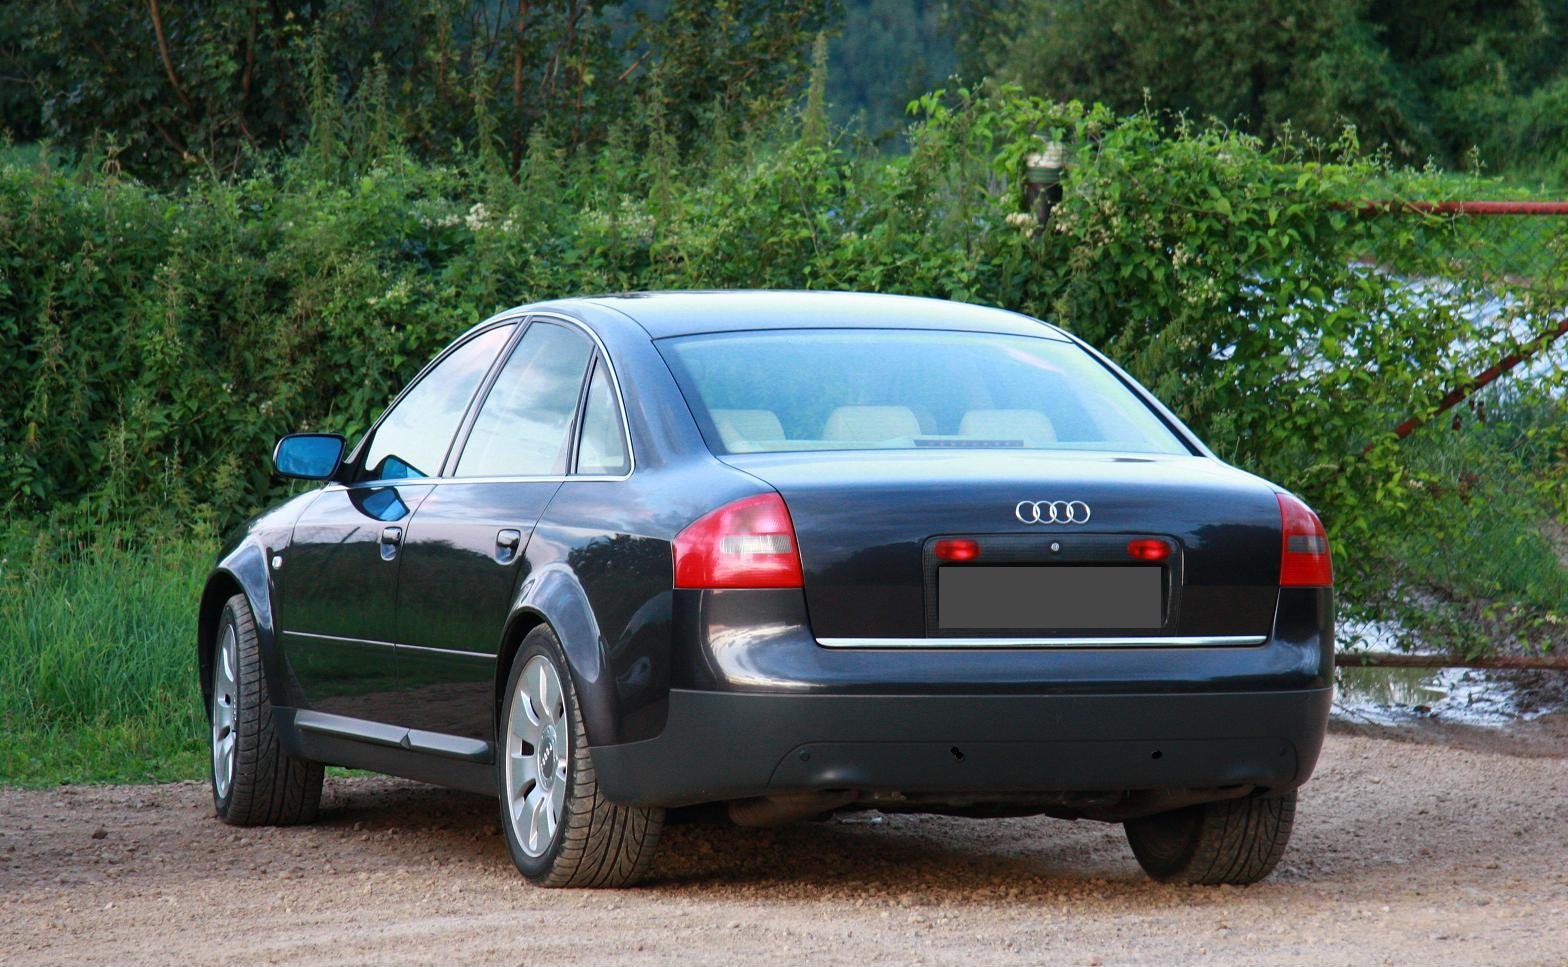 Ауди частные объявления. Audi a6 c5 2004. Audi a6 c5 2000. Audi a6 c5 седан. Audi a6 [c5] 1997-2004.